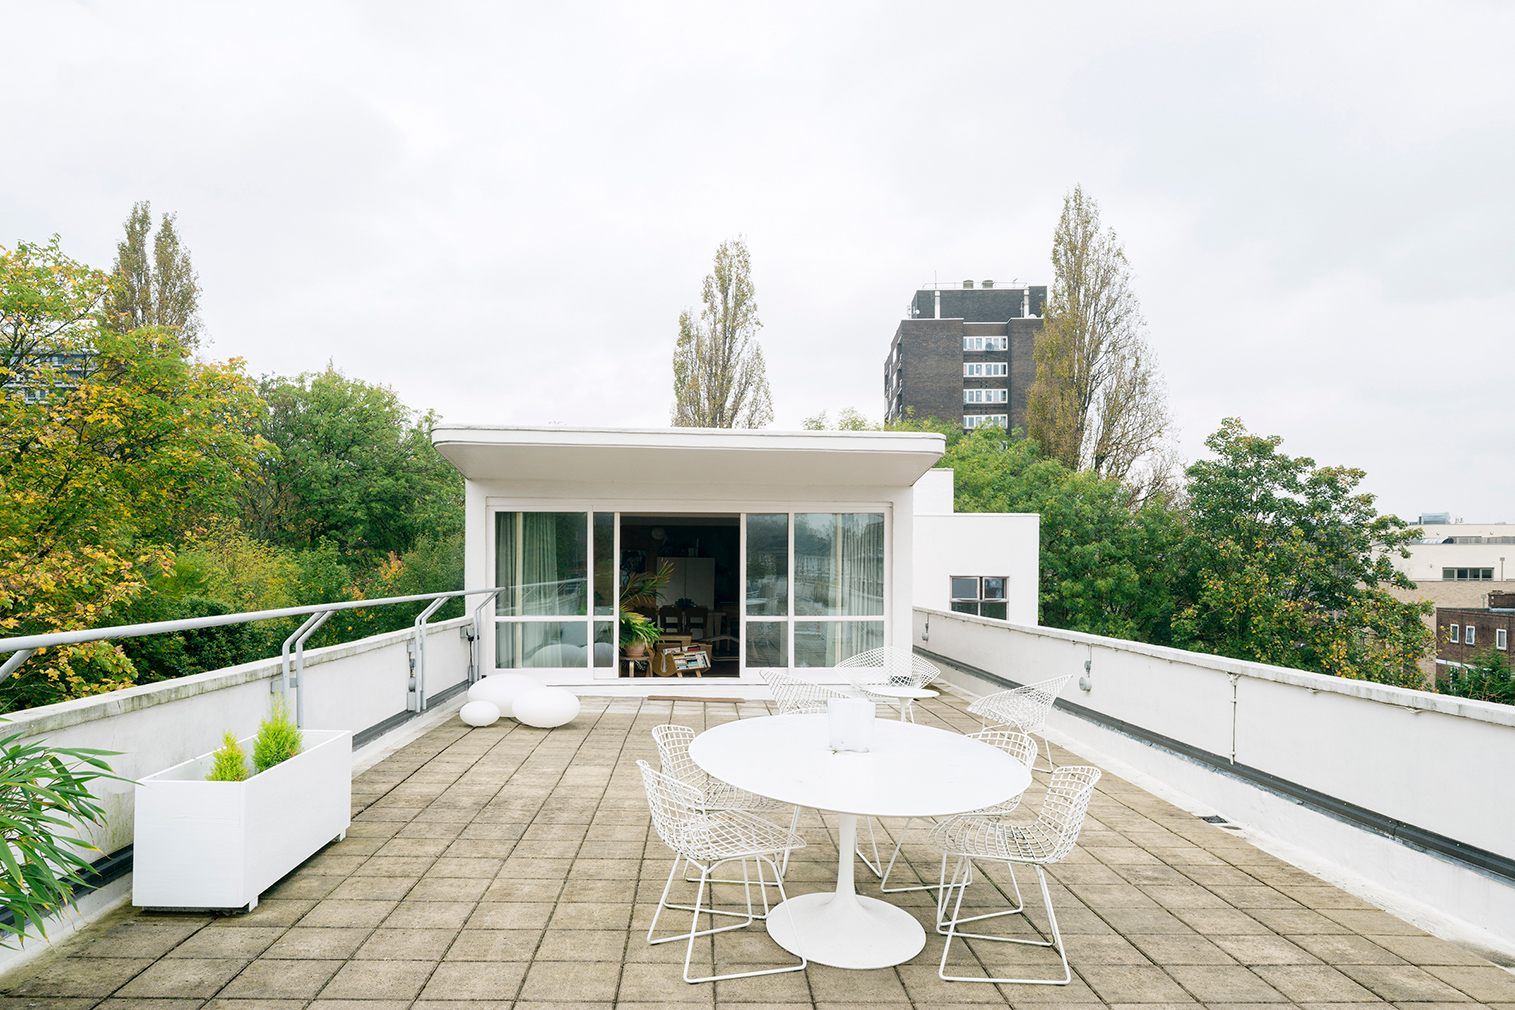 London’s Isokon Building penthouse for sale